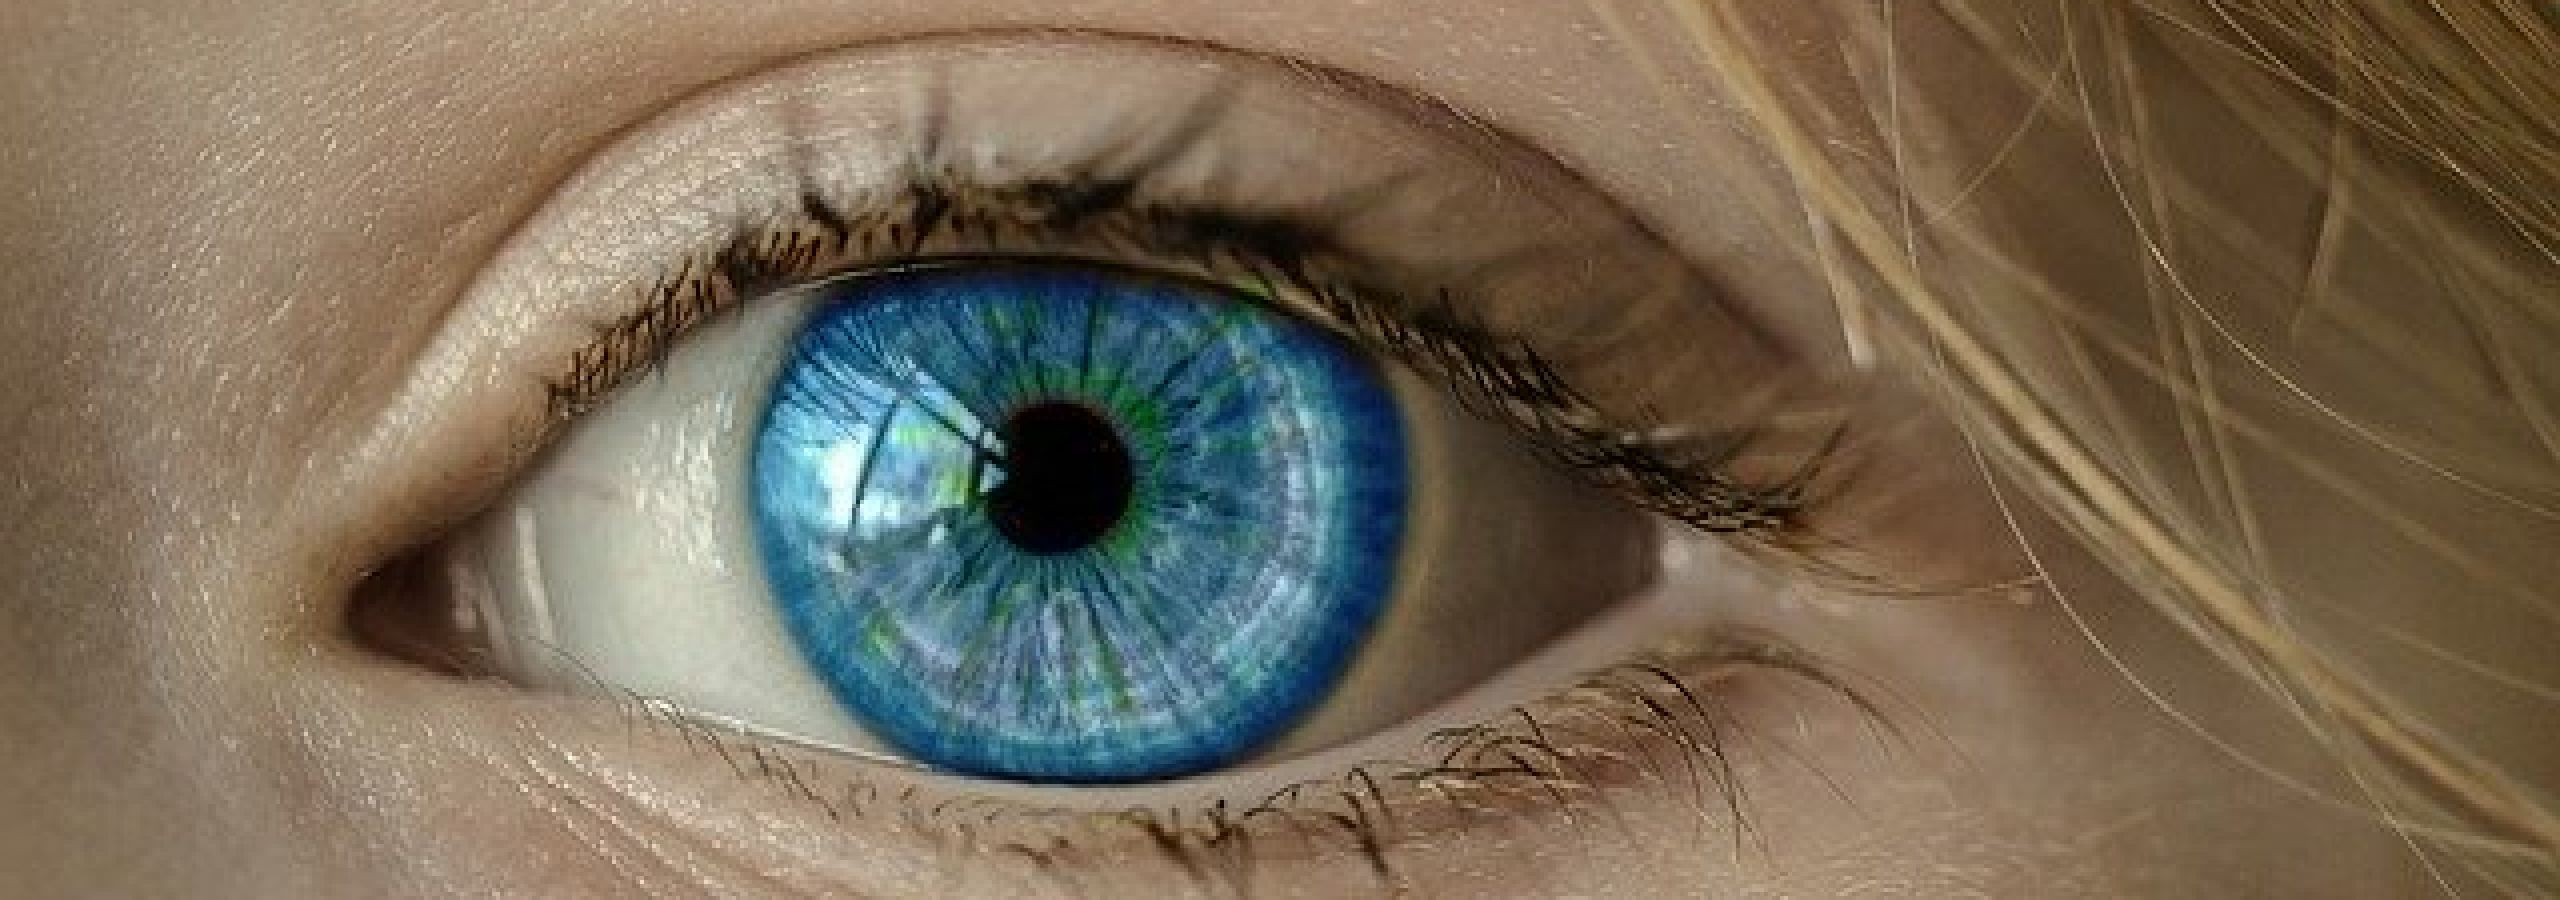 blue eye of a woman blue eye of a woman blue eye of a woman blue eye of a woman blue eye of a woman blue eye of a woman